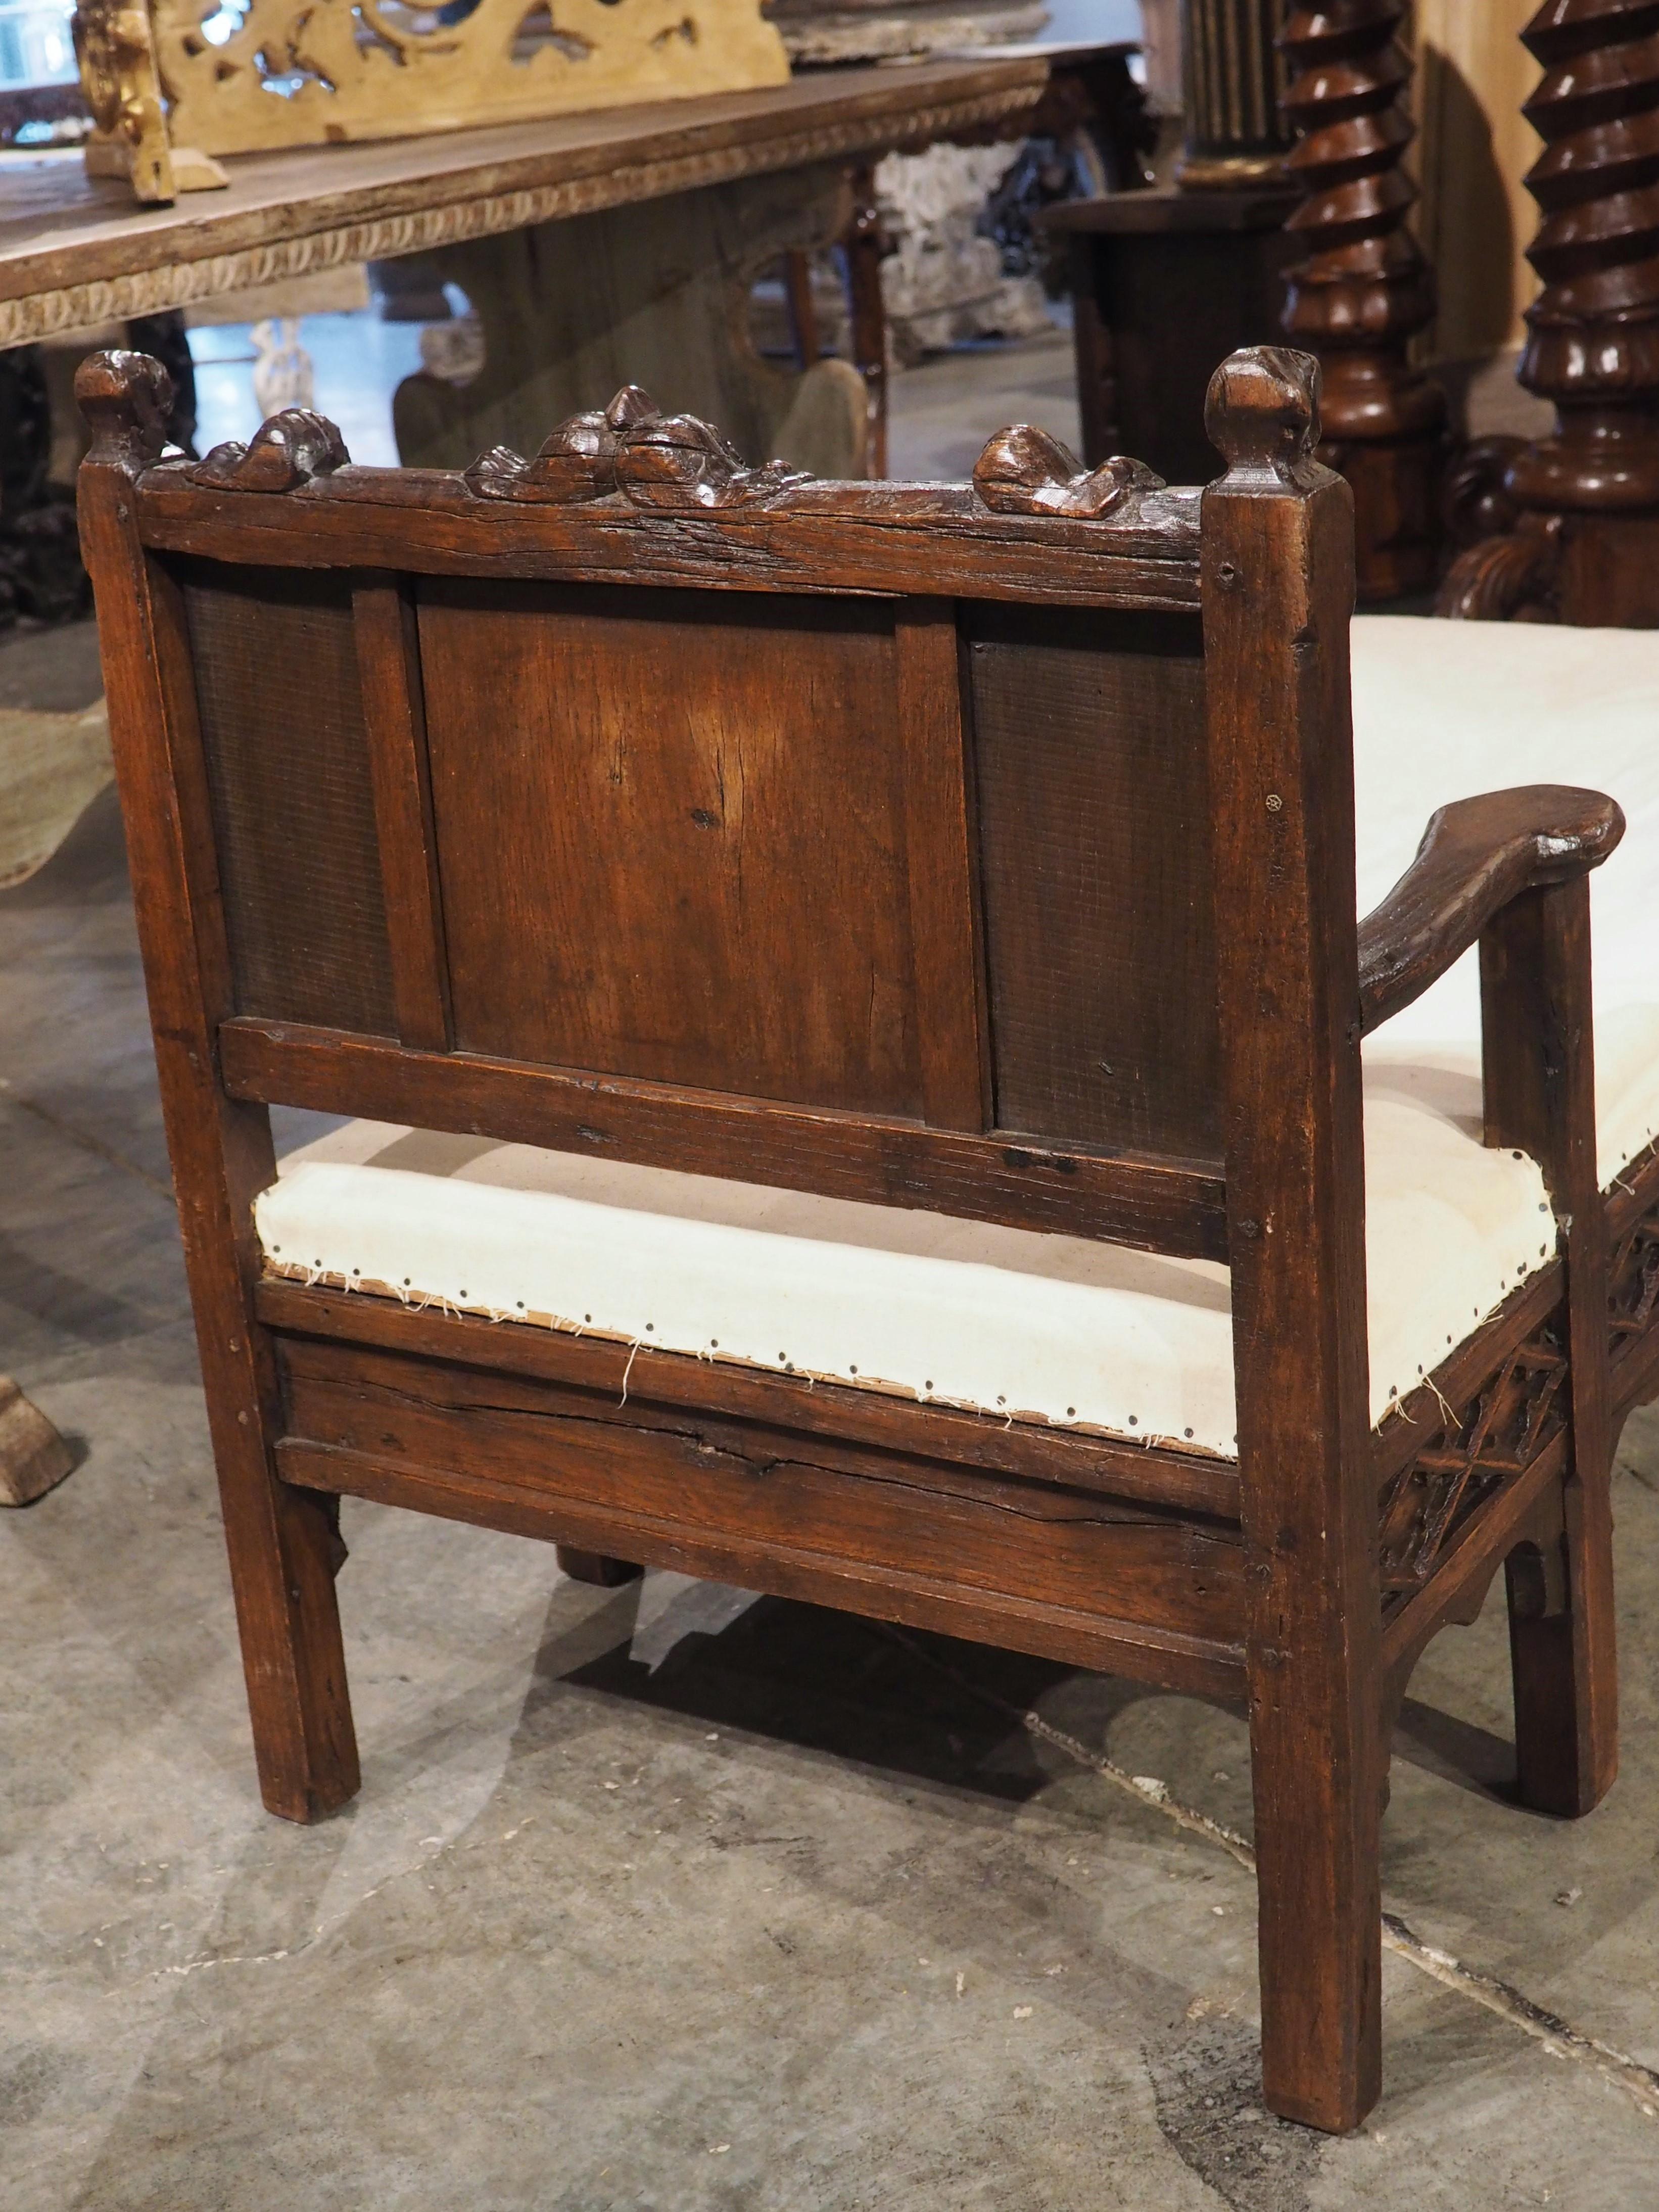 Aux XVIIIe et XIXe siècles, il n'était pas rare que des artisans qualifiés réutilisent d'anciennes sculptures en bois pour créer leurs propres meubles. Un menuisier français a utilisé cette technique (vers 1870) en incorporant un dossier de chaise